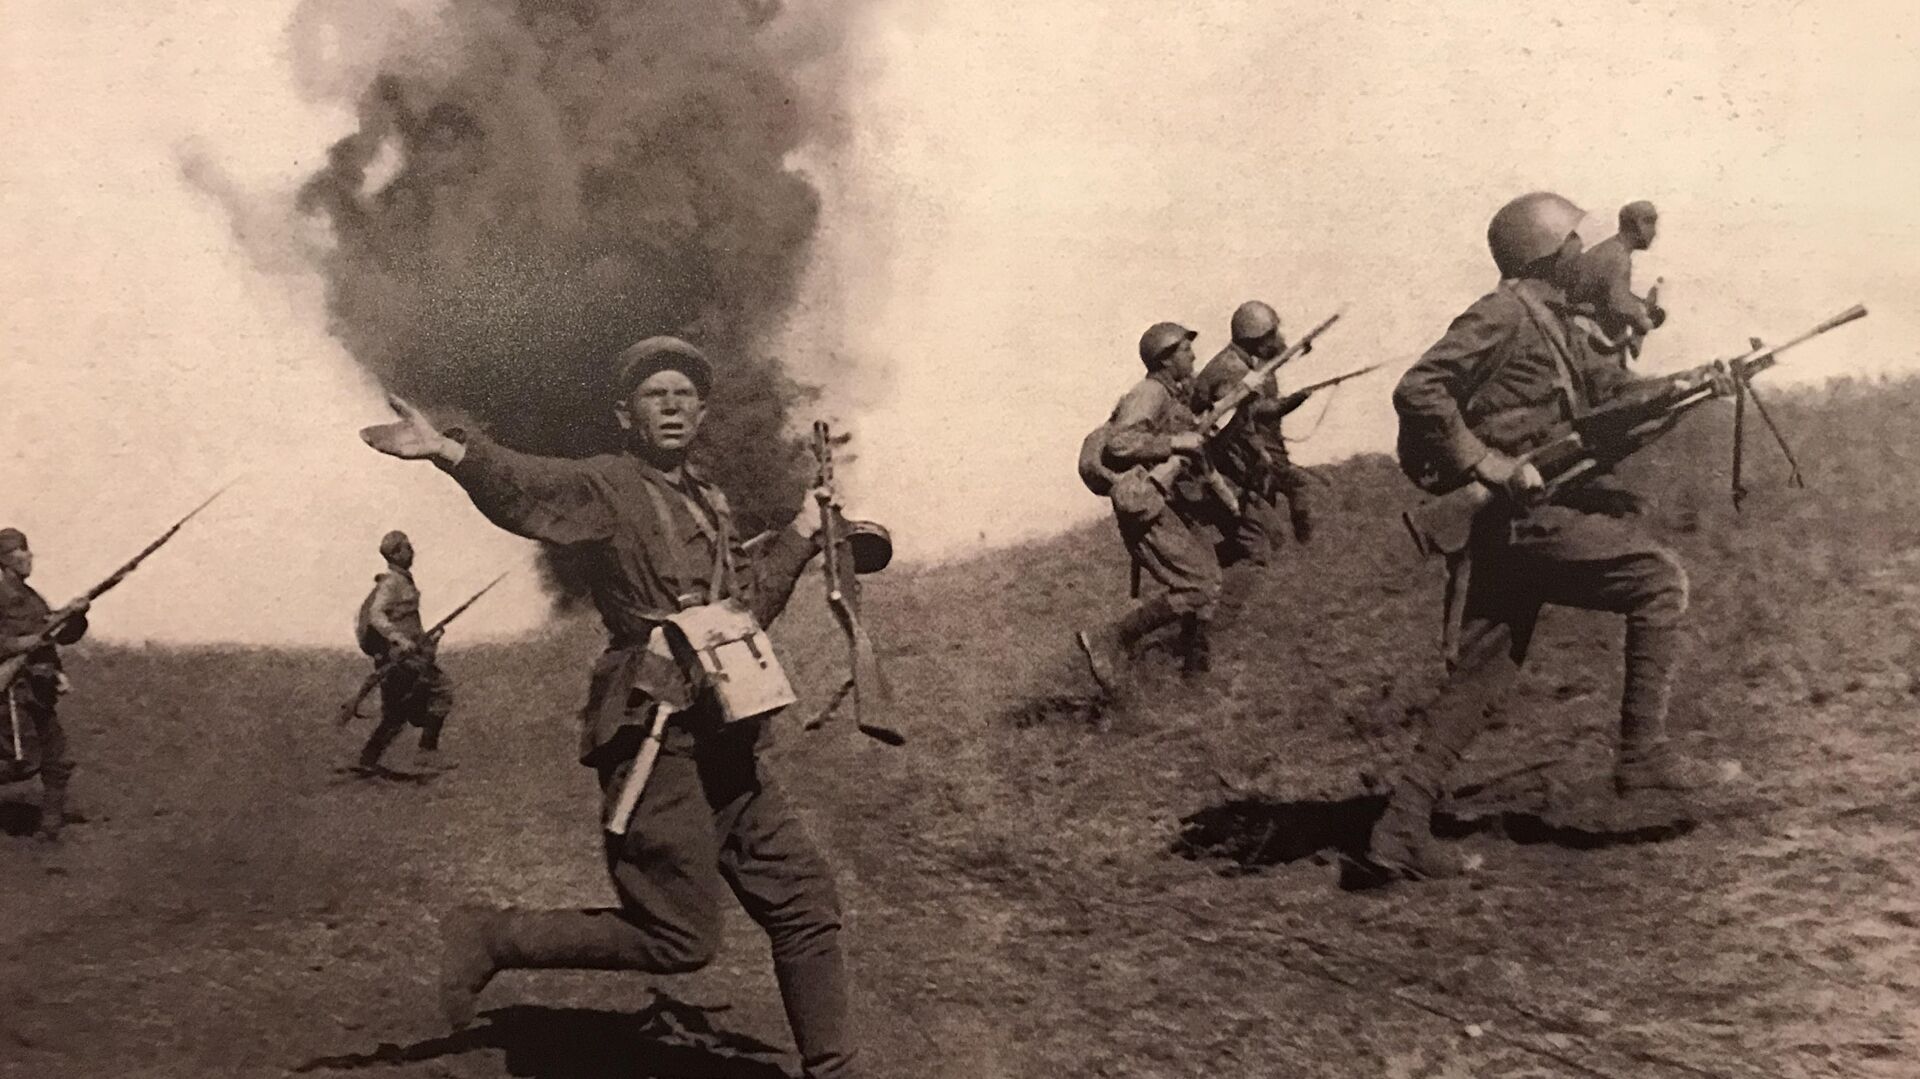 Борбена дејства Црвене армије на прилазима Стаљинграду  - Sputnik Србија, 1920, 09.12.2021